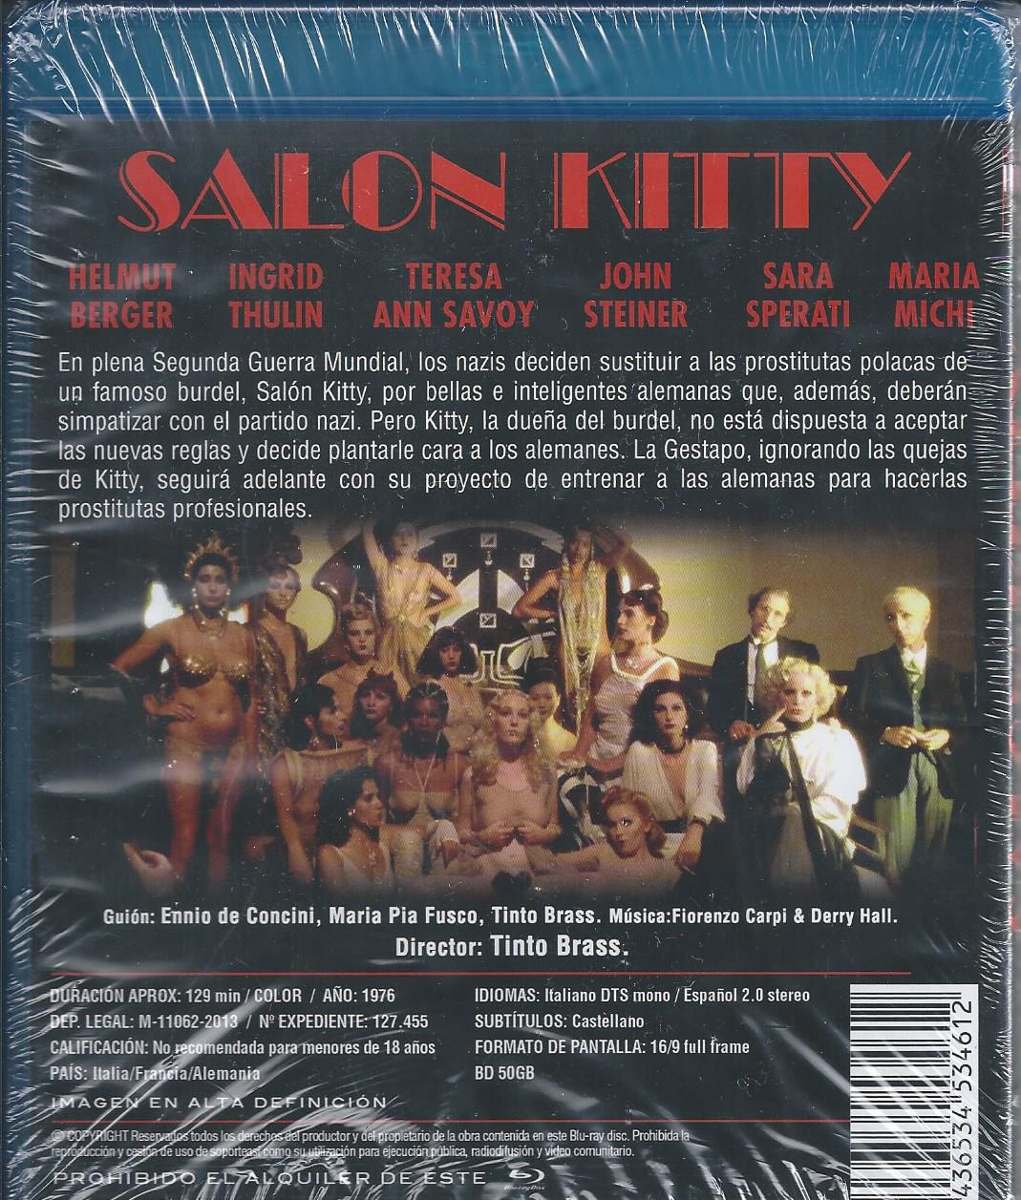 Salón Kitty Bluray Importado Cine Italiano Tinto Brass Mercado Libre 